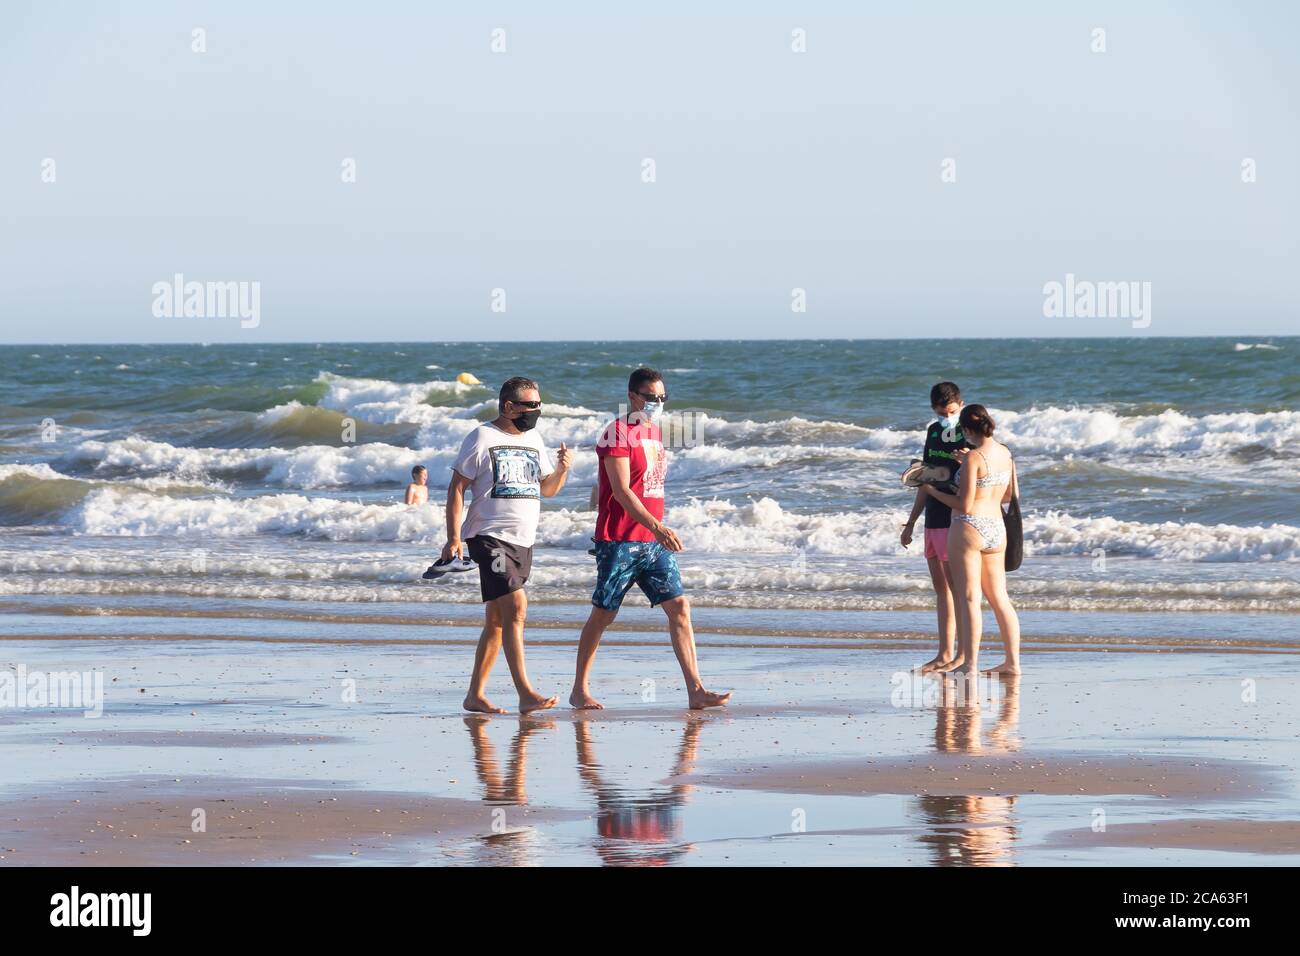 Punta Umbria, Huelva, Espagne - 2 août 2020 : deux hommes marchant sur la plage portant des masques protecteurs ou médicaux. Nouvelle normale en Espagne avec social d Banque D'Images